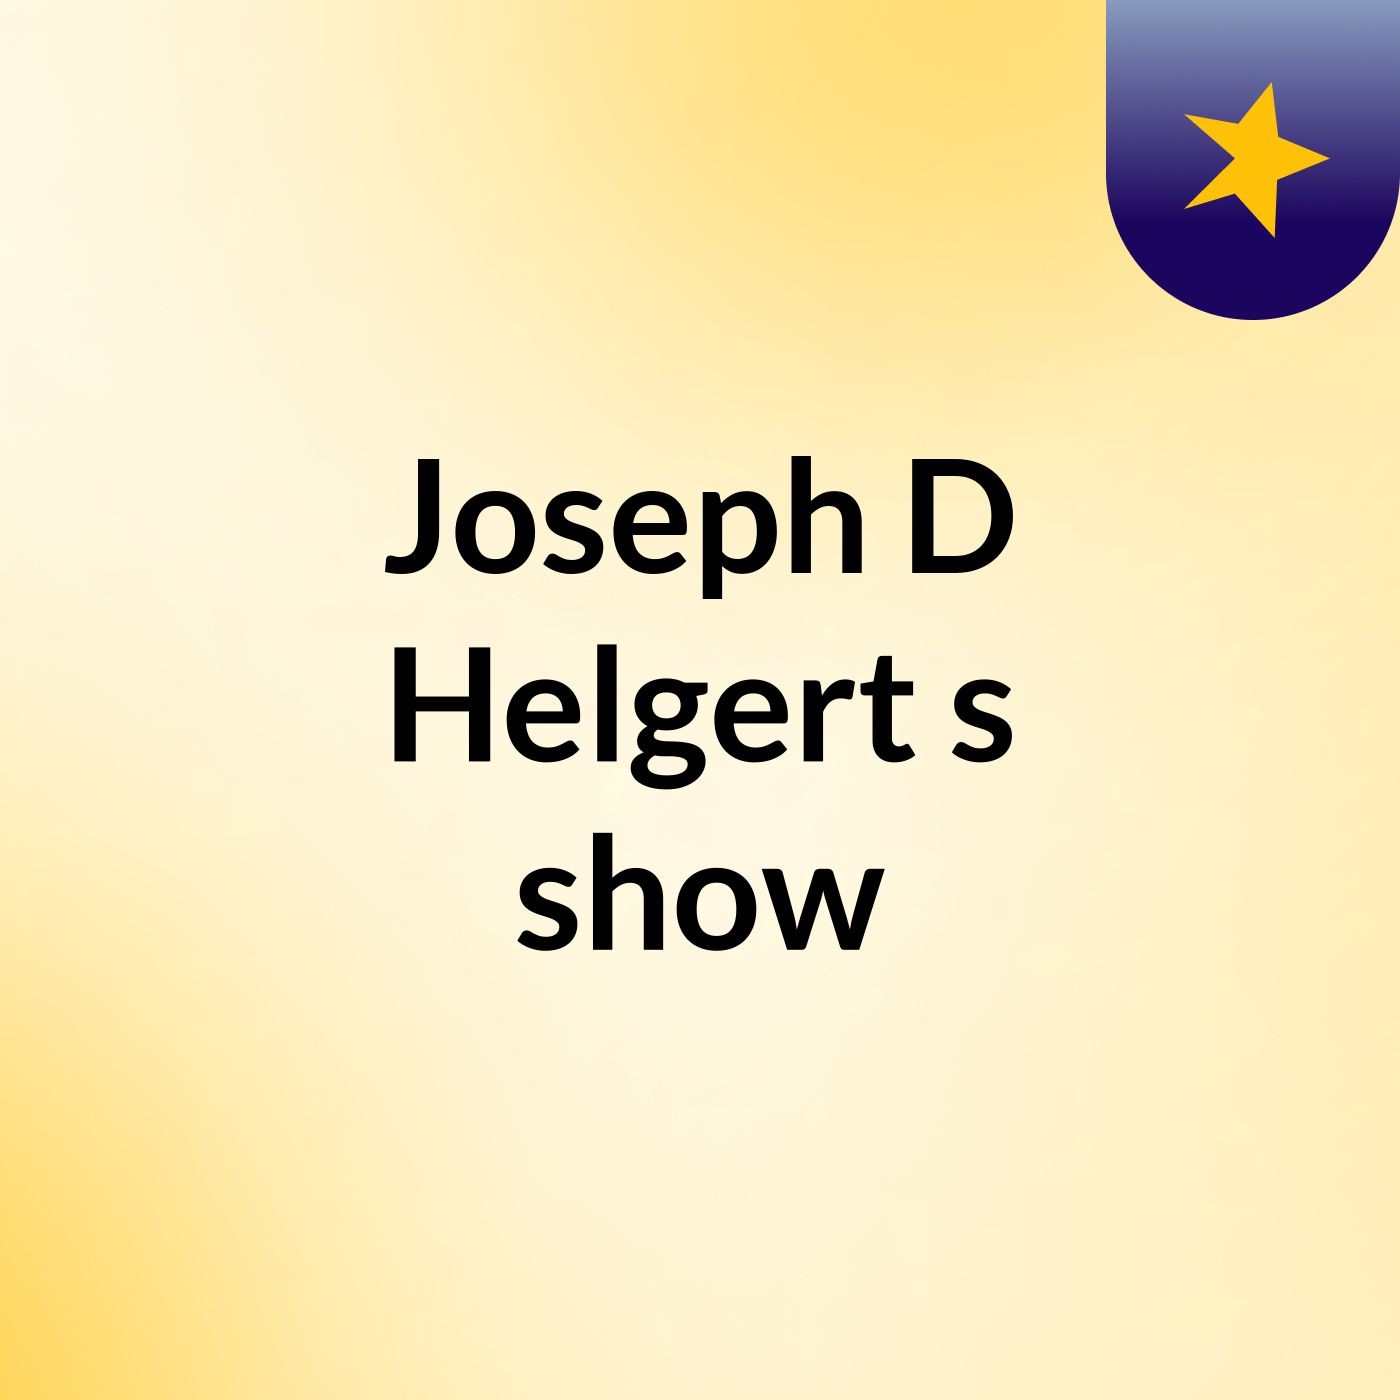 Joseph D Helgert's show